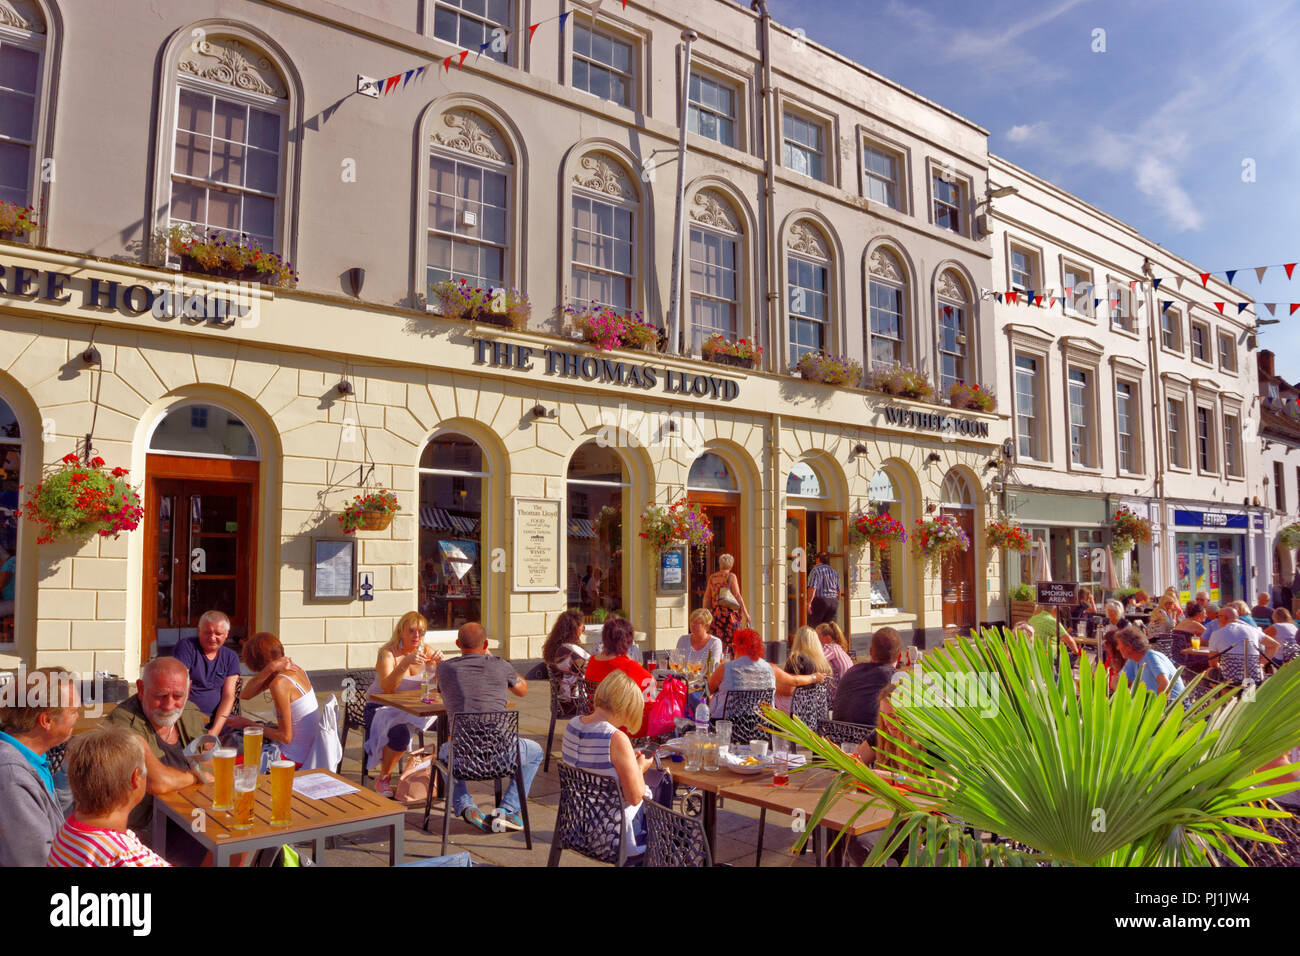 "La pub Wetherspoons Thomas Lloyd' à la Warwick place du marché. Le Warwickshire. Angleterre, Royaume-Uni. Banque D'Images